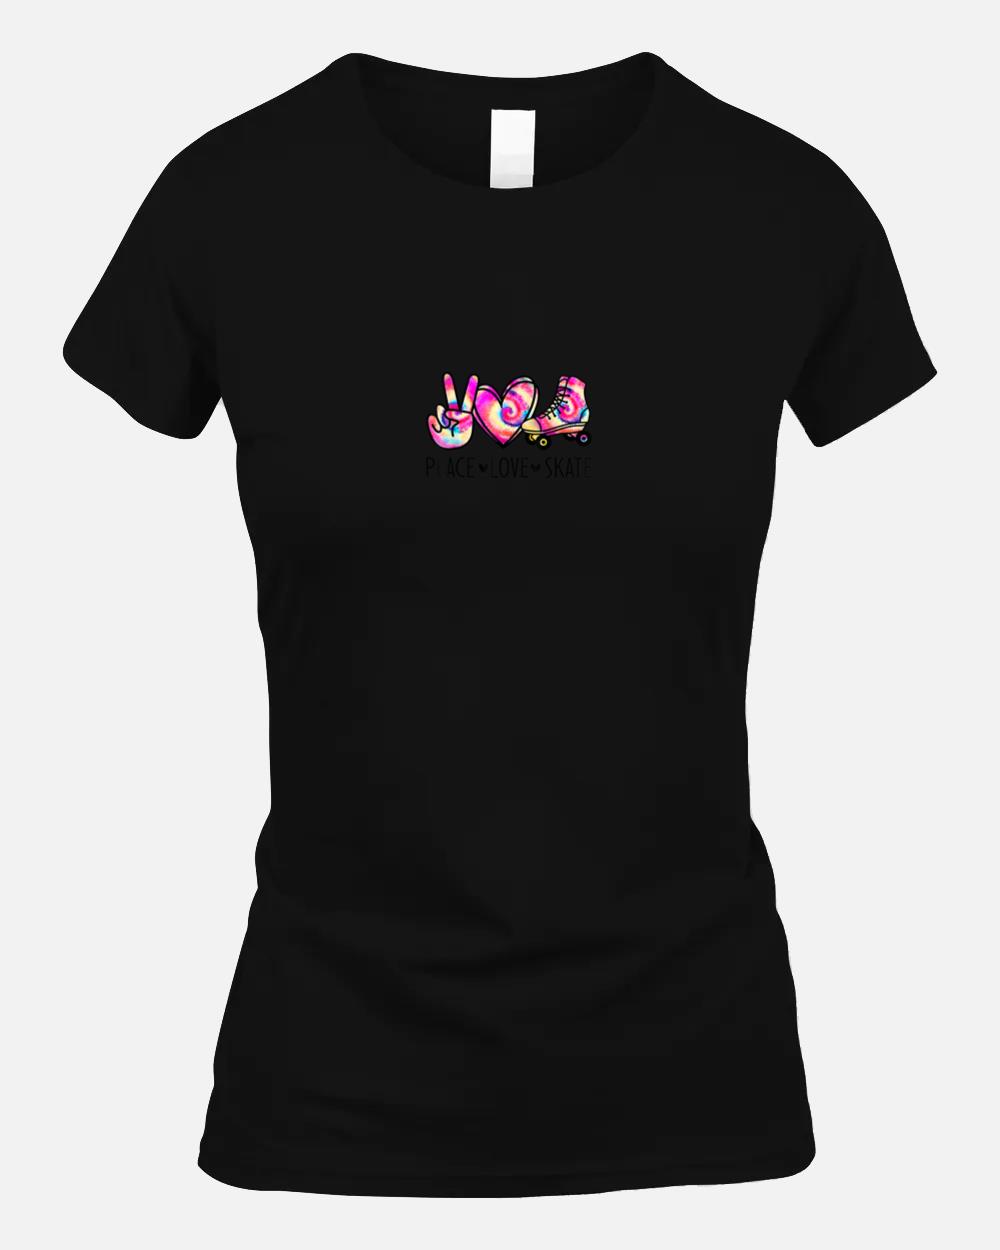 Peace Love Skate Tie Dye Roller Skating for Teen Girls Unisex T-Shirt